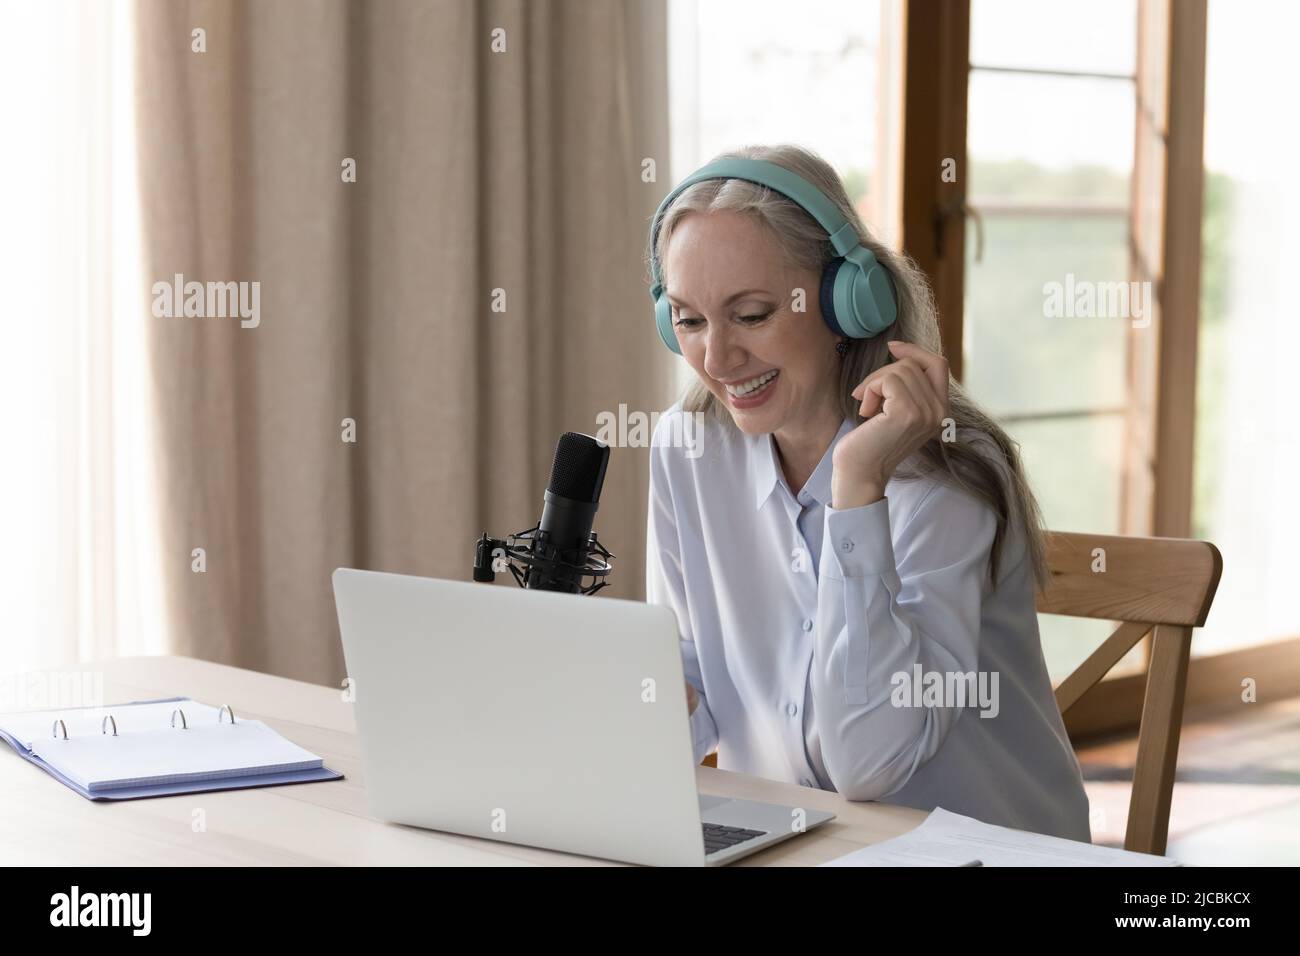 La donna di mezza età si siede alla scrivania con un computer portatile e parla nel microfono Foto Stock